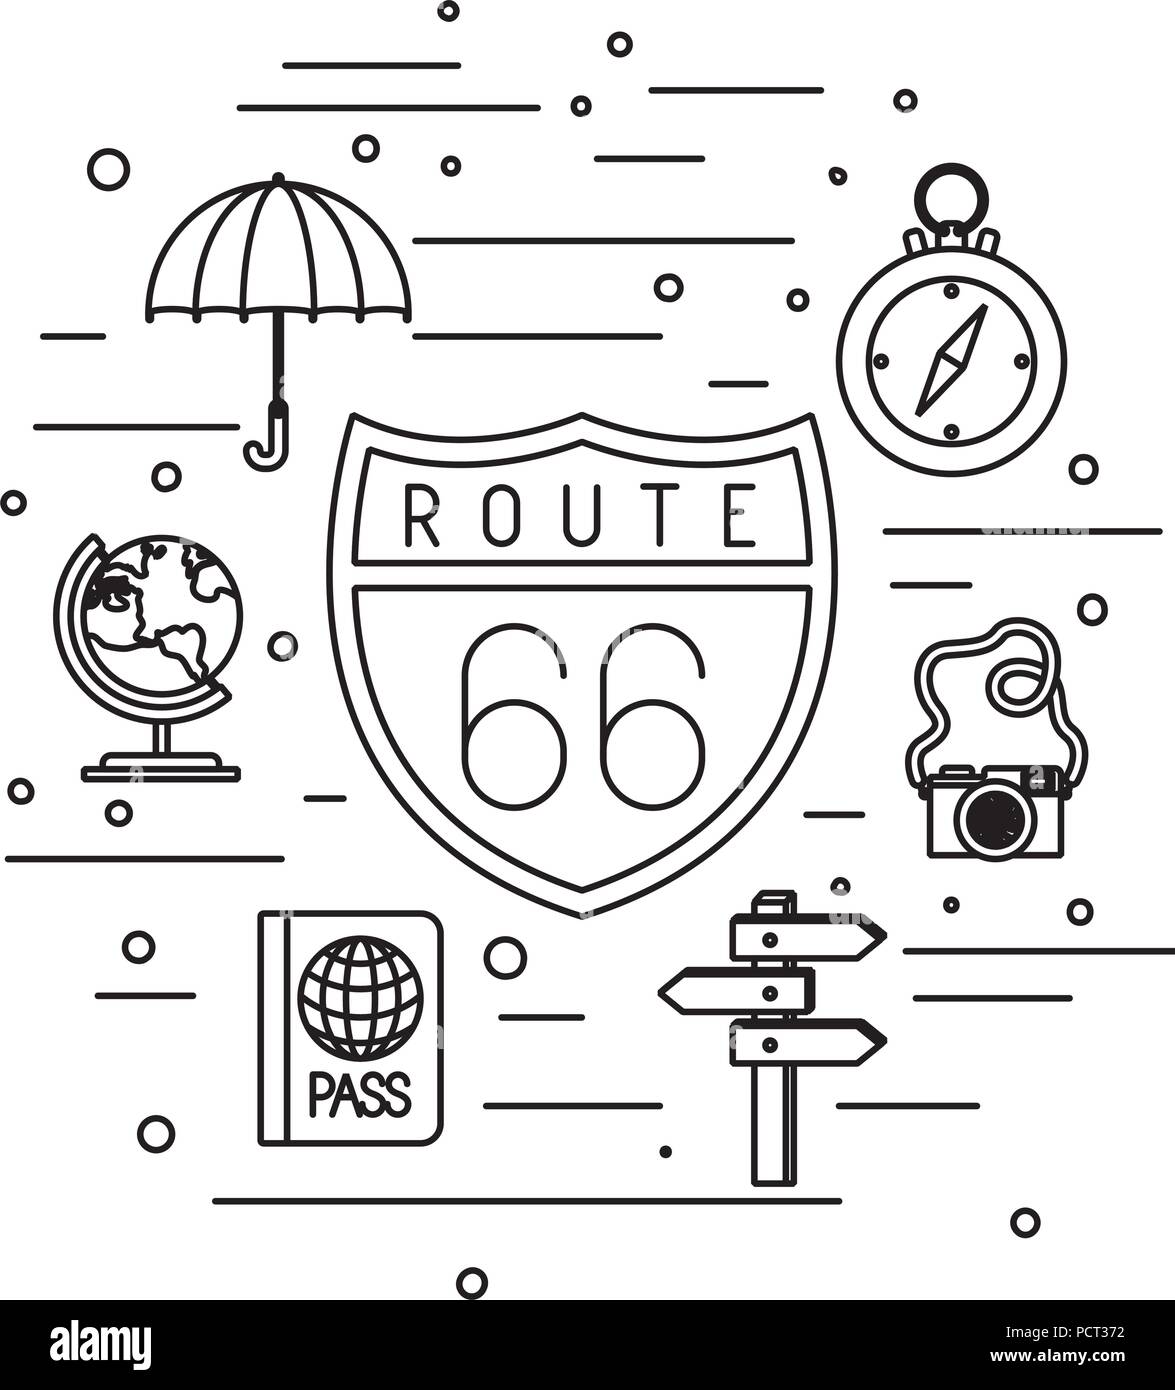 66 route de signal avec set de voyage icons Illustration de Vecteur